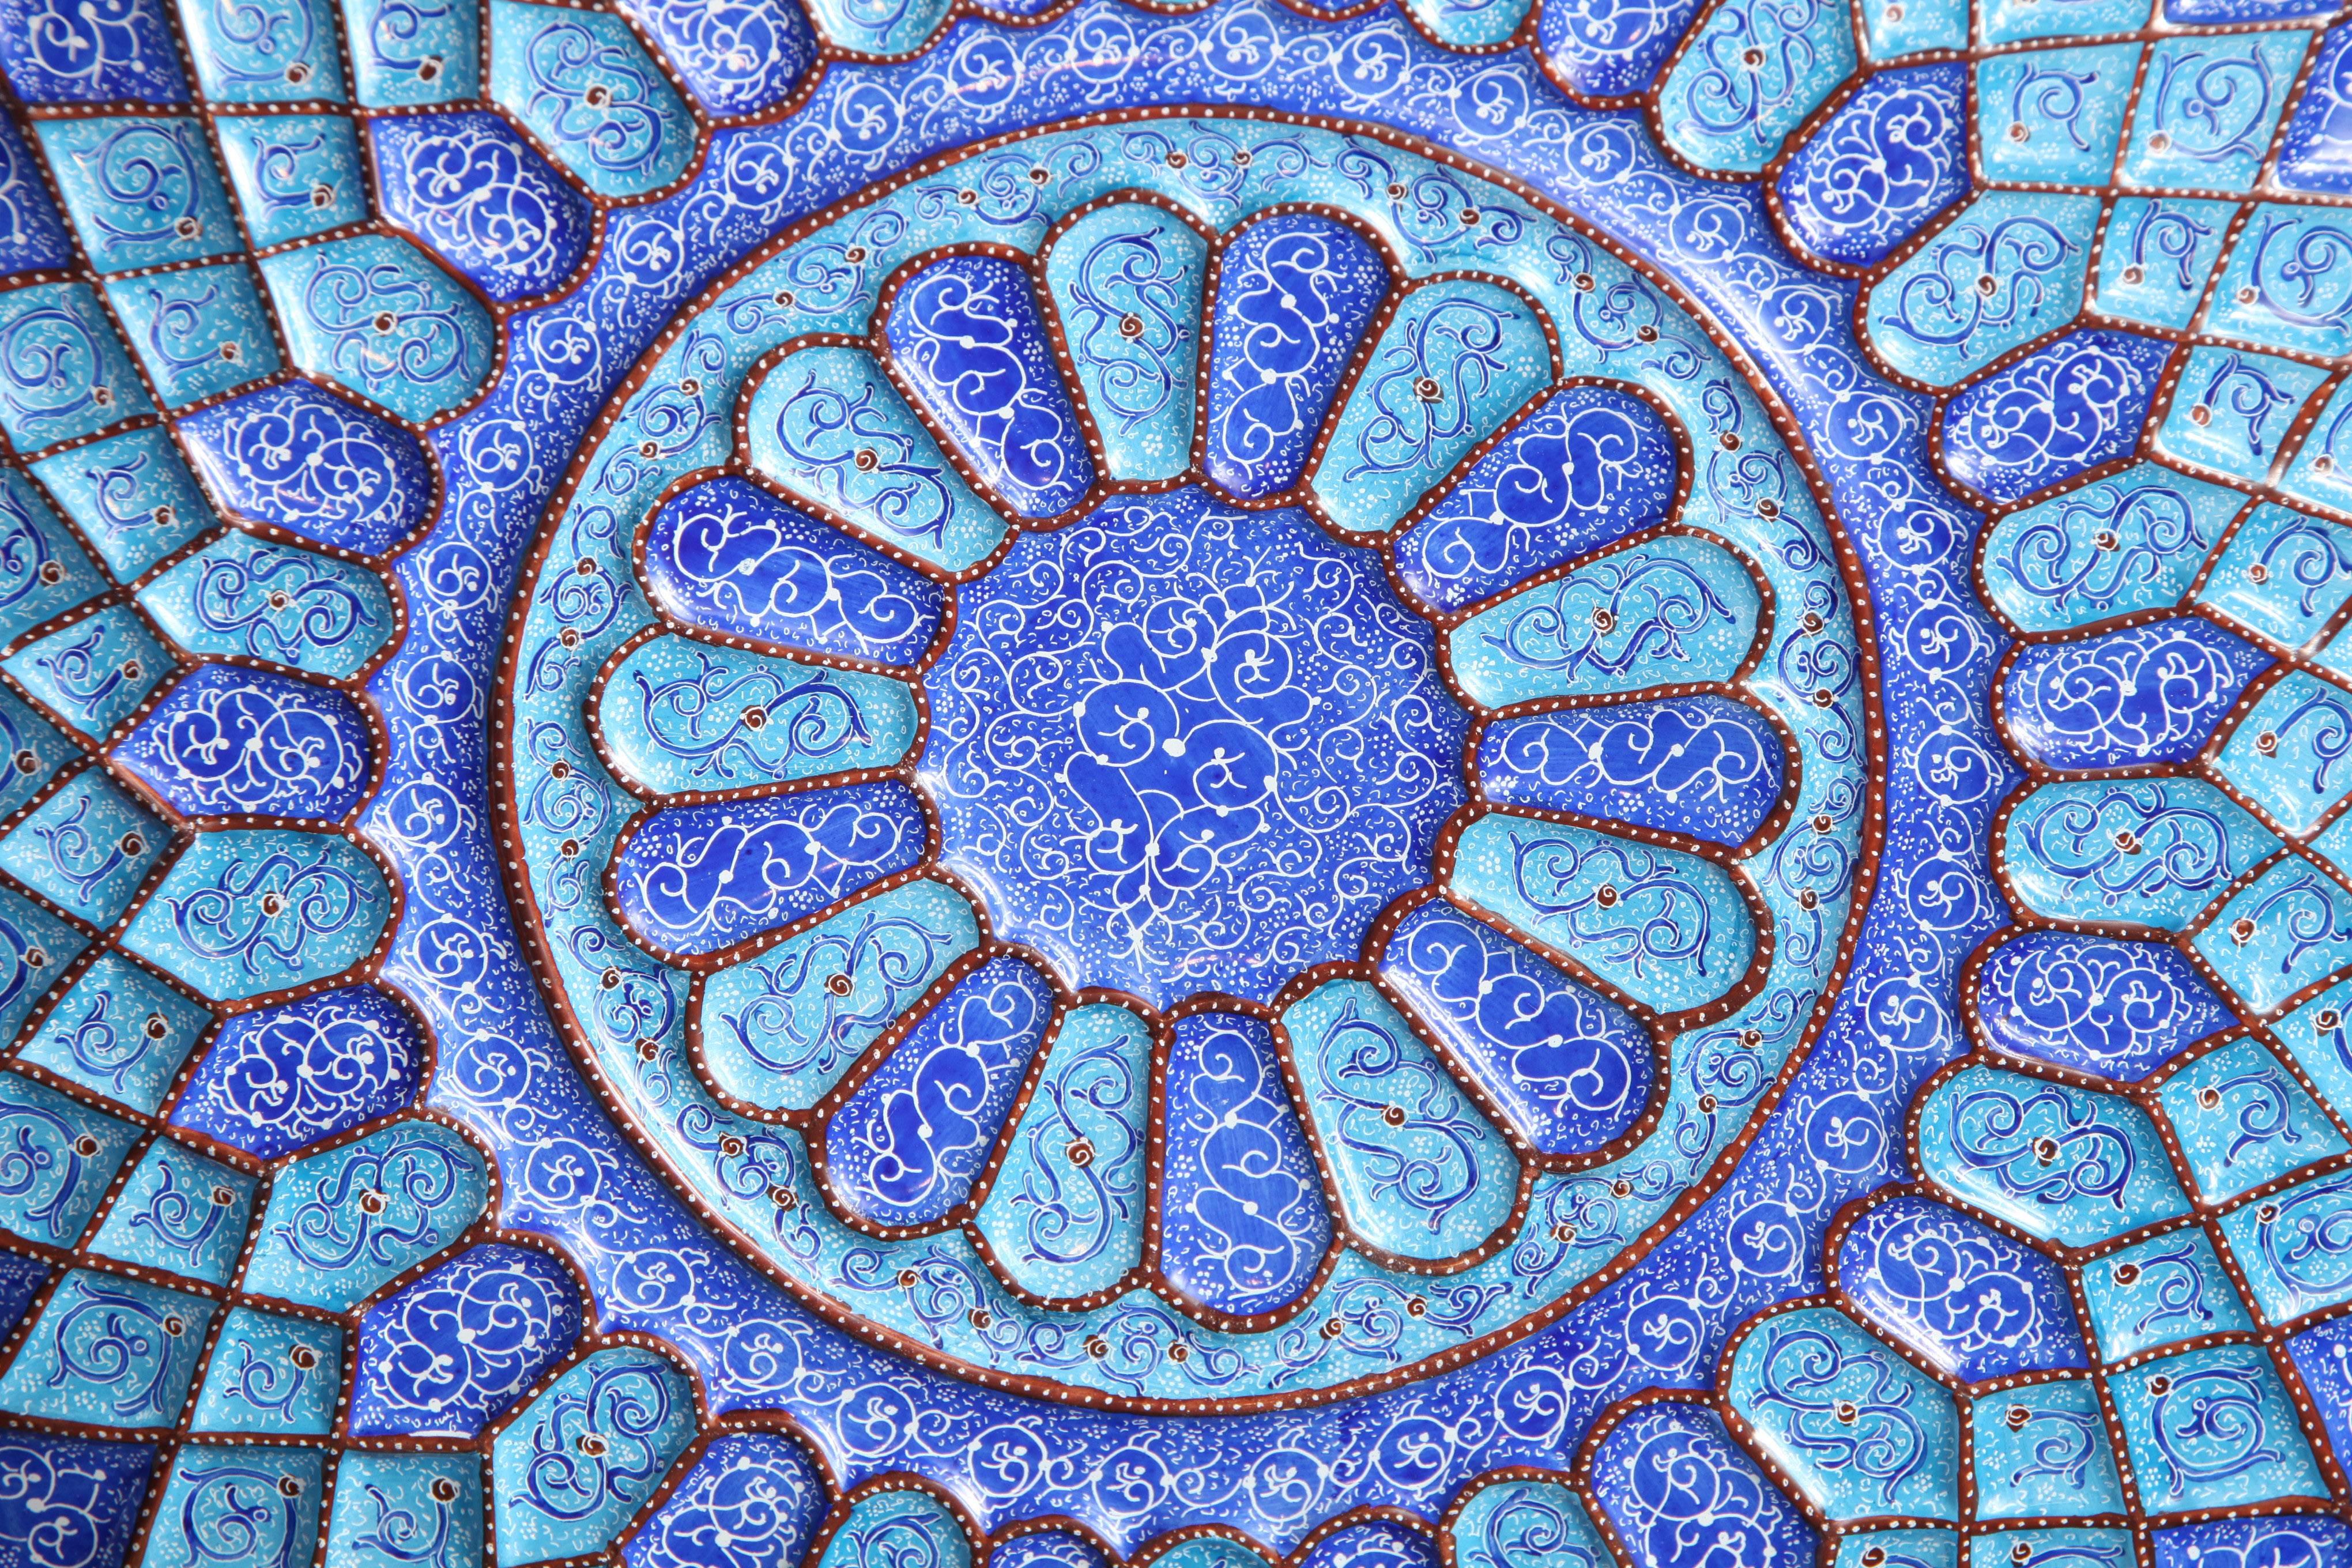 Persian Blue Iranian Minakari Plates, Vitreous Enamel on Copper